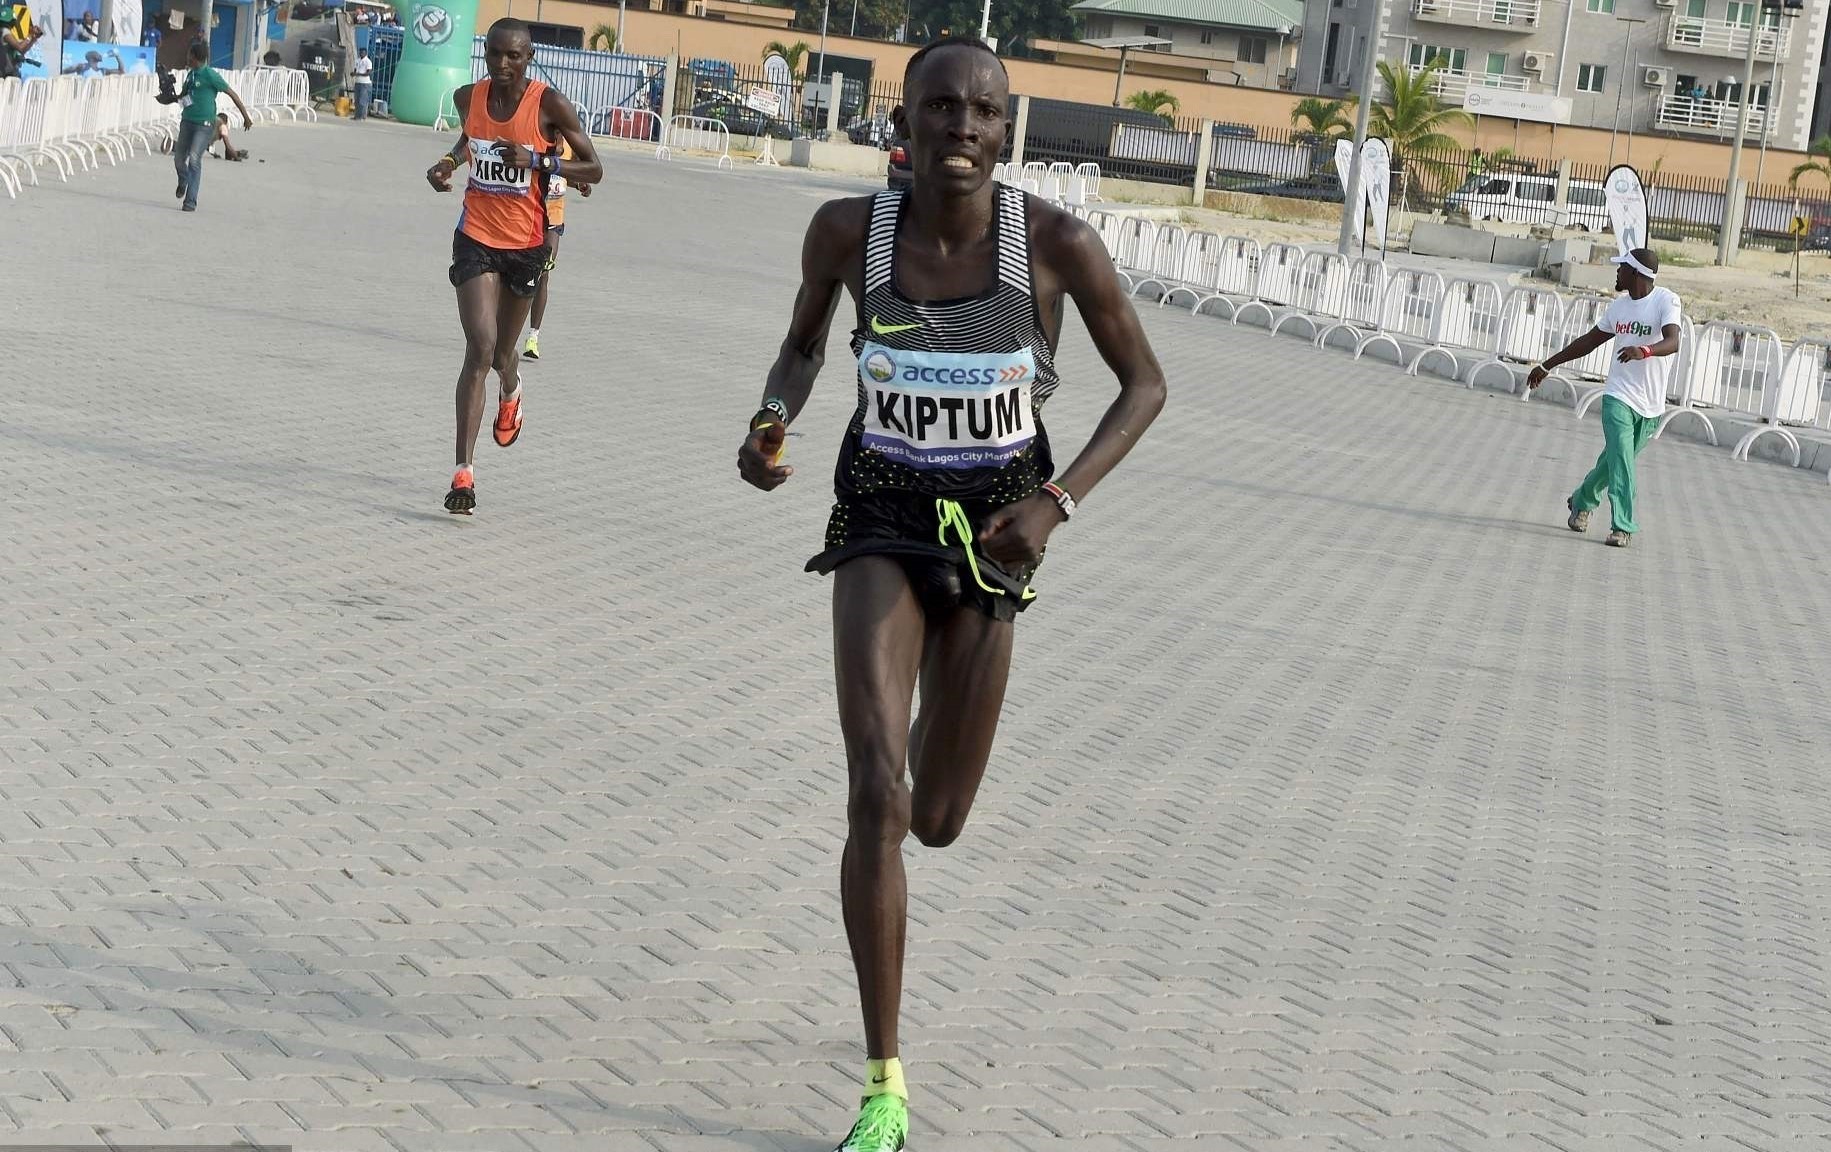 Kenyan Abraham Kiptum winning the Lagos International Marathon